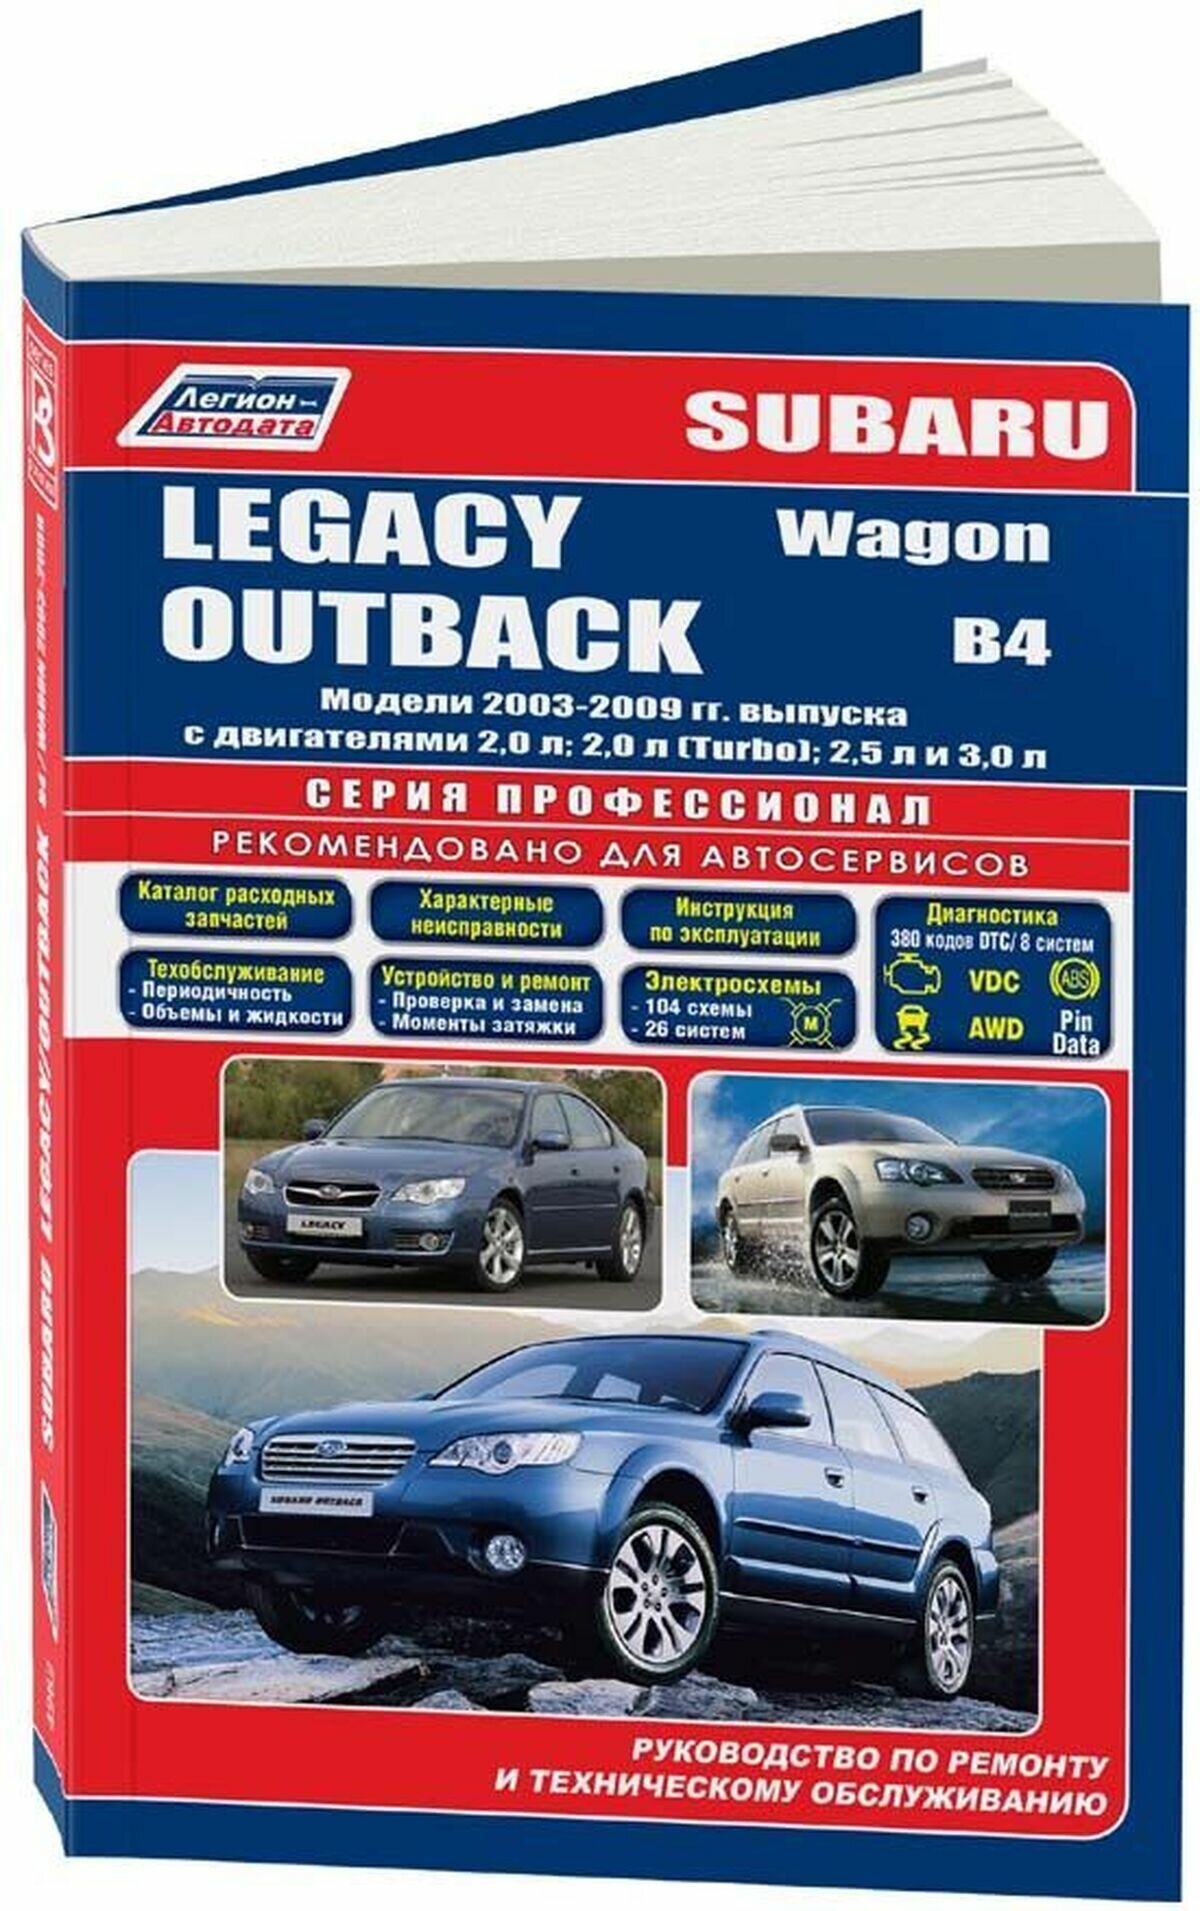 Subaru Legacy. Outback. B4 / Wagon. Модели 2003-2009 гг. выпуска с двигателями 2,0 л., 2,0 л.(Turbo), 2,5 л. и 3,0 л. Устройство, техническое обслуживание и ремонт - фото №8